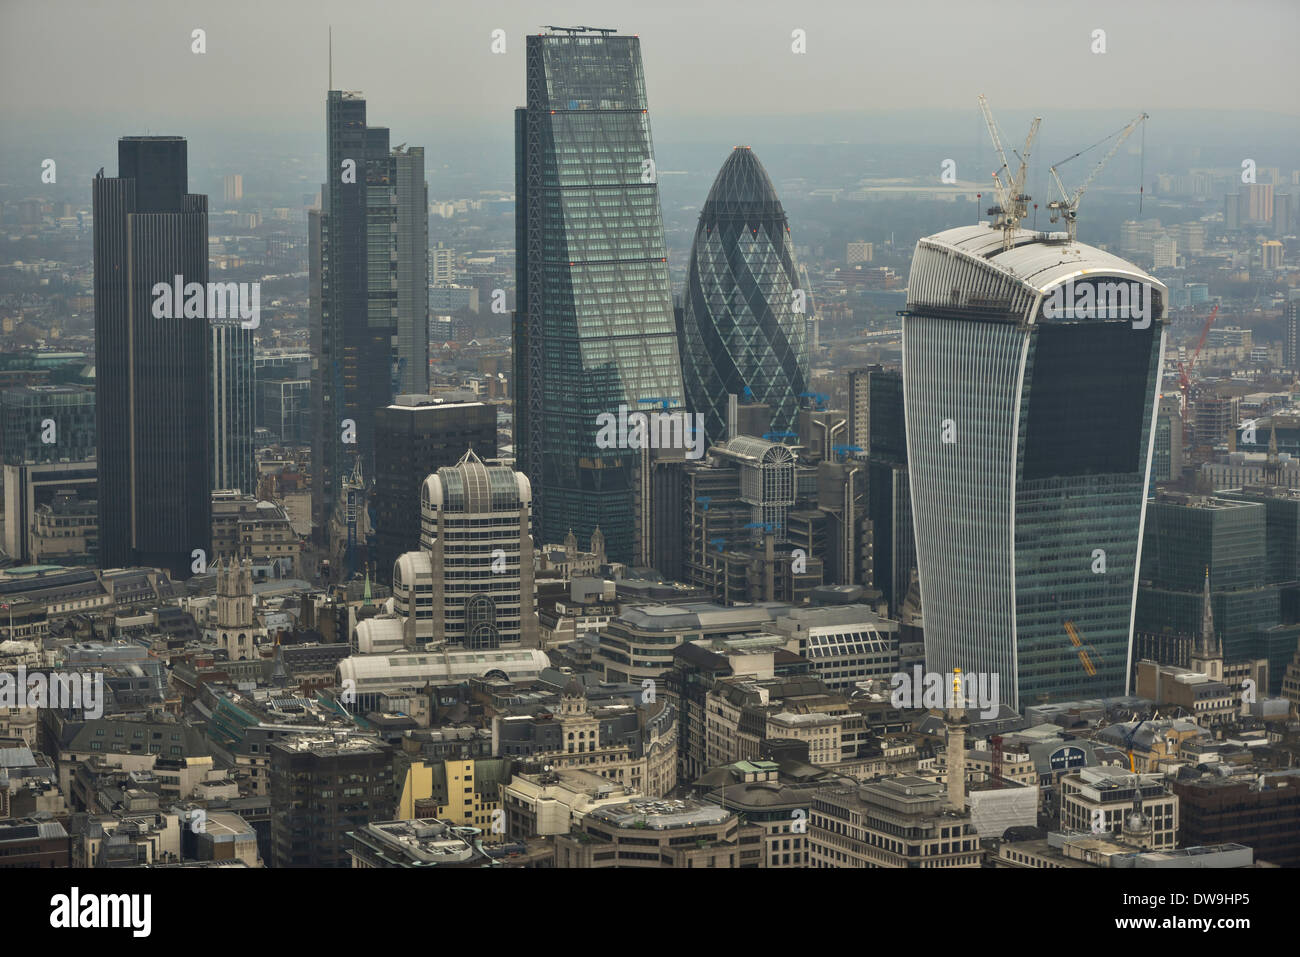 Fotografía aérea mostrando los edificios de gran altura de la milla cuadrada en Londres Foto de stock